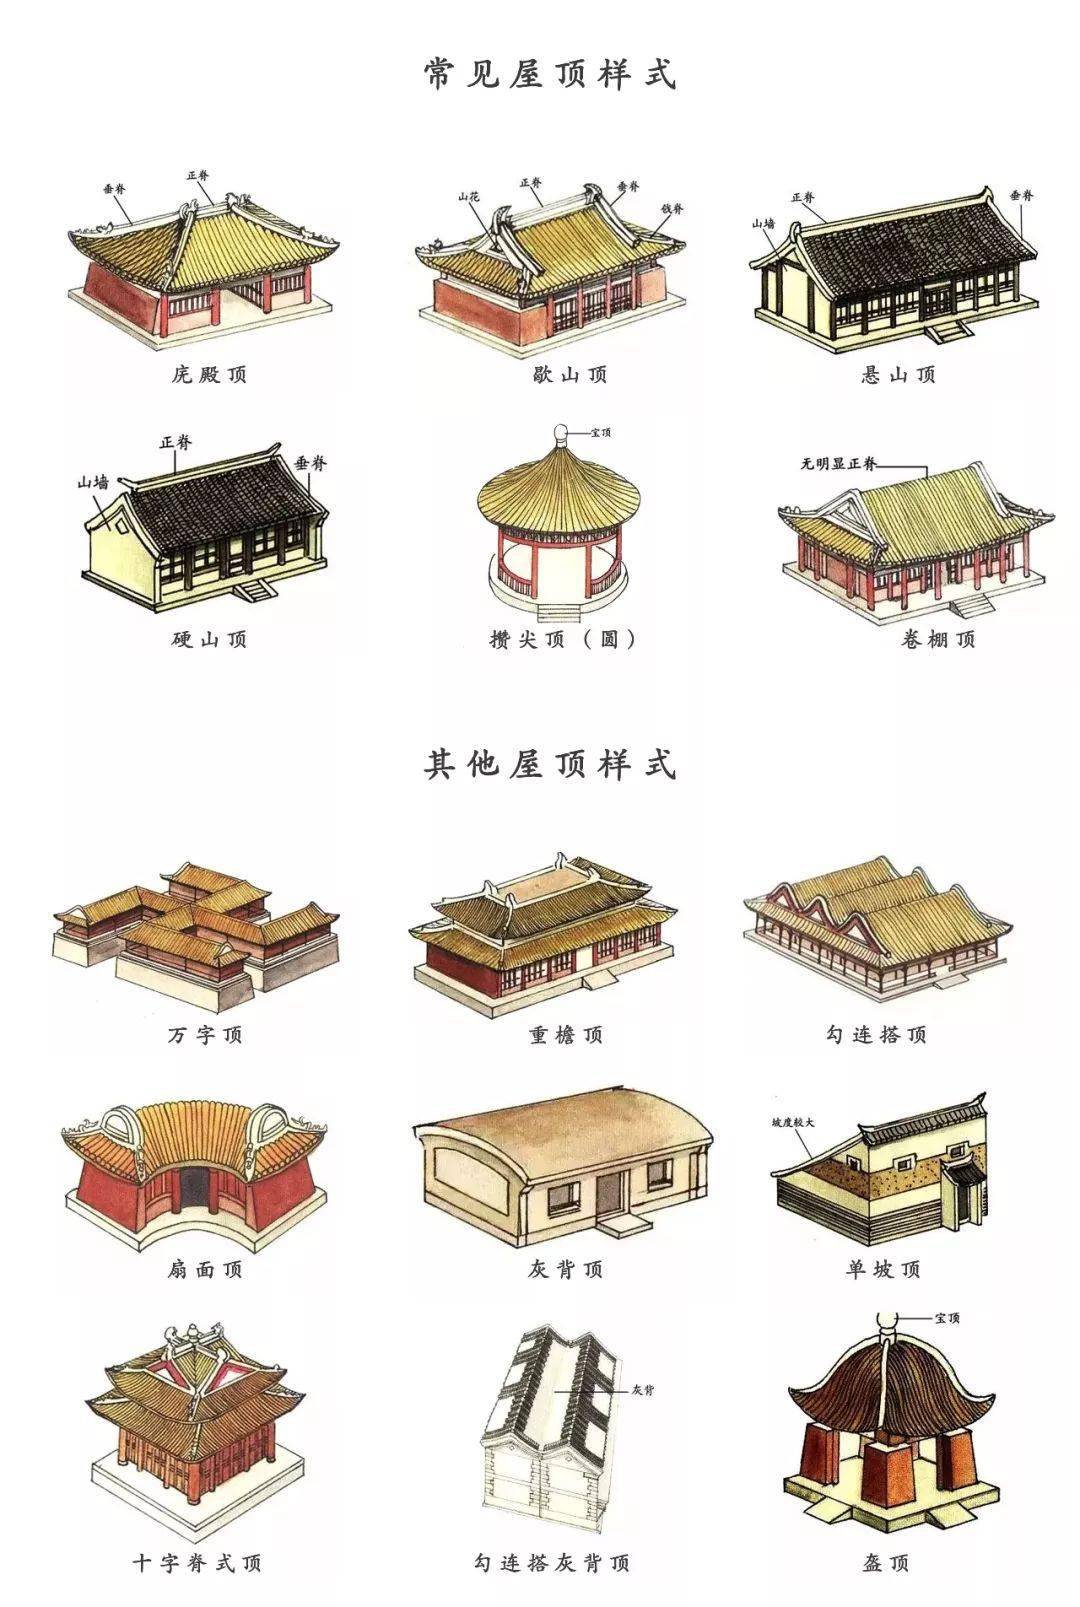 我们可以把一座中国古建筑理解为三个部分:屋顶,屋身,和台基